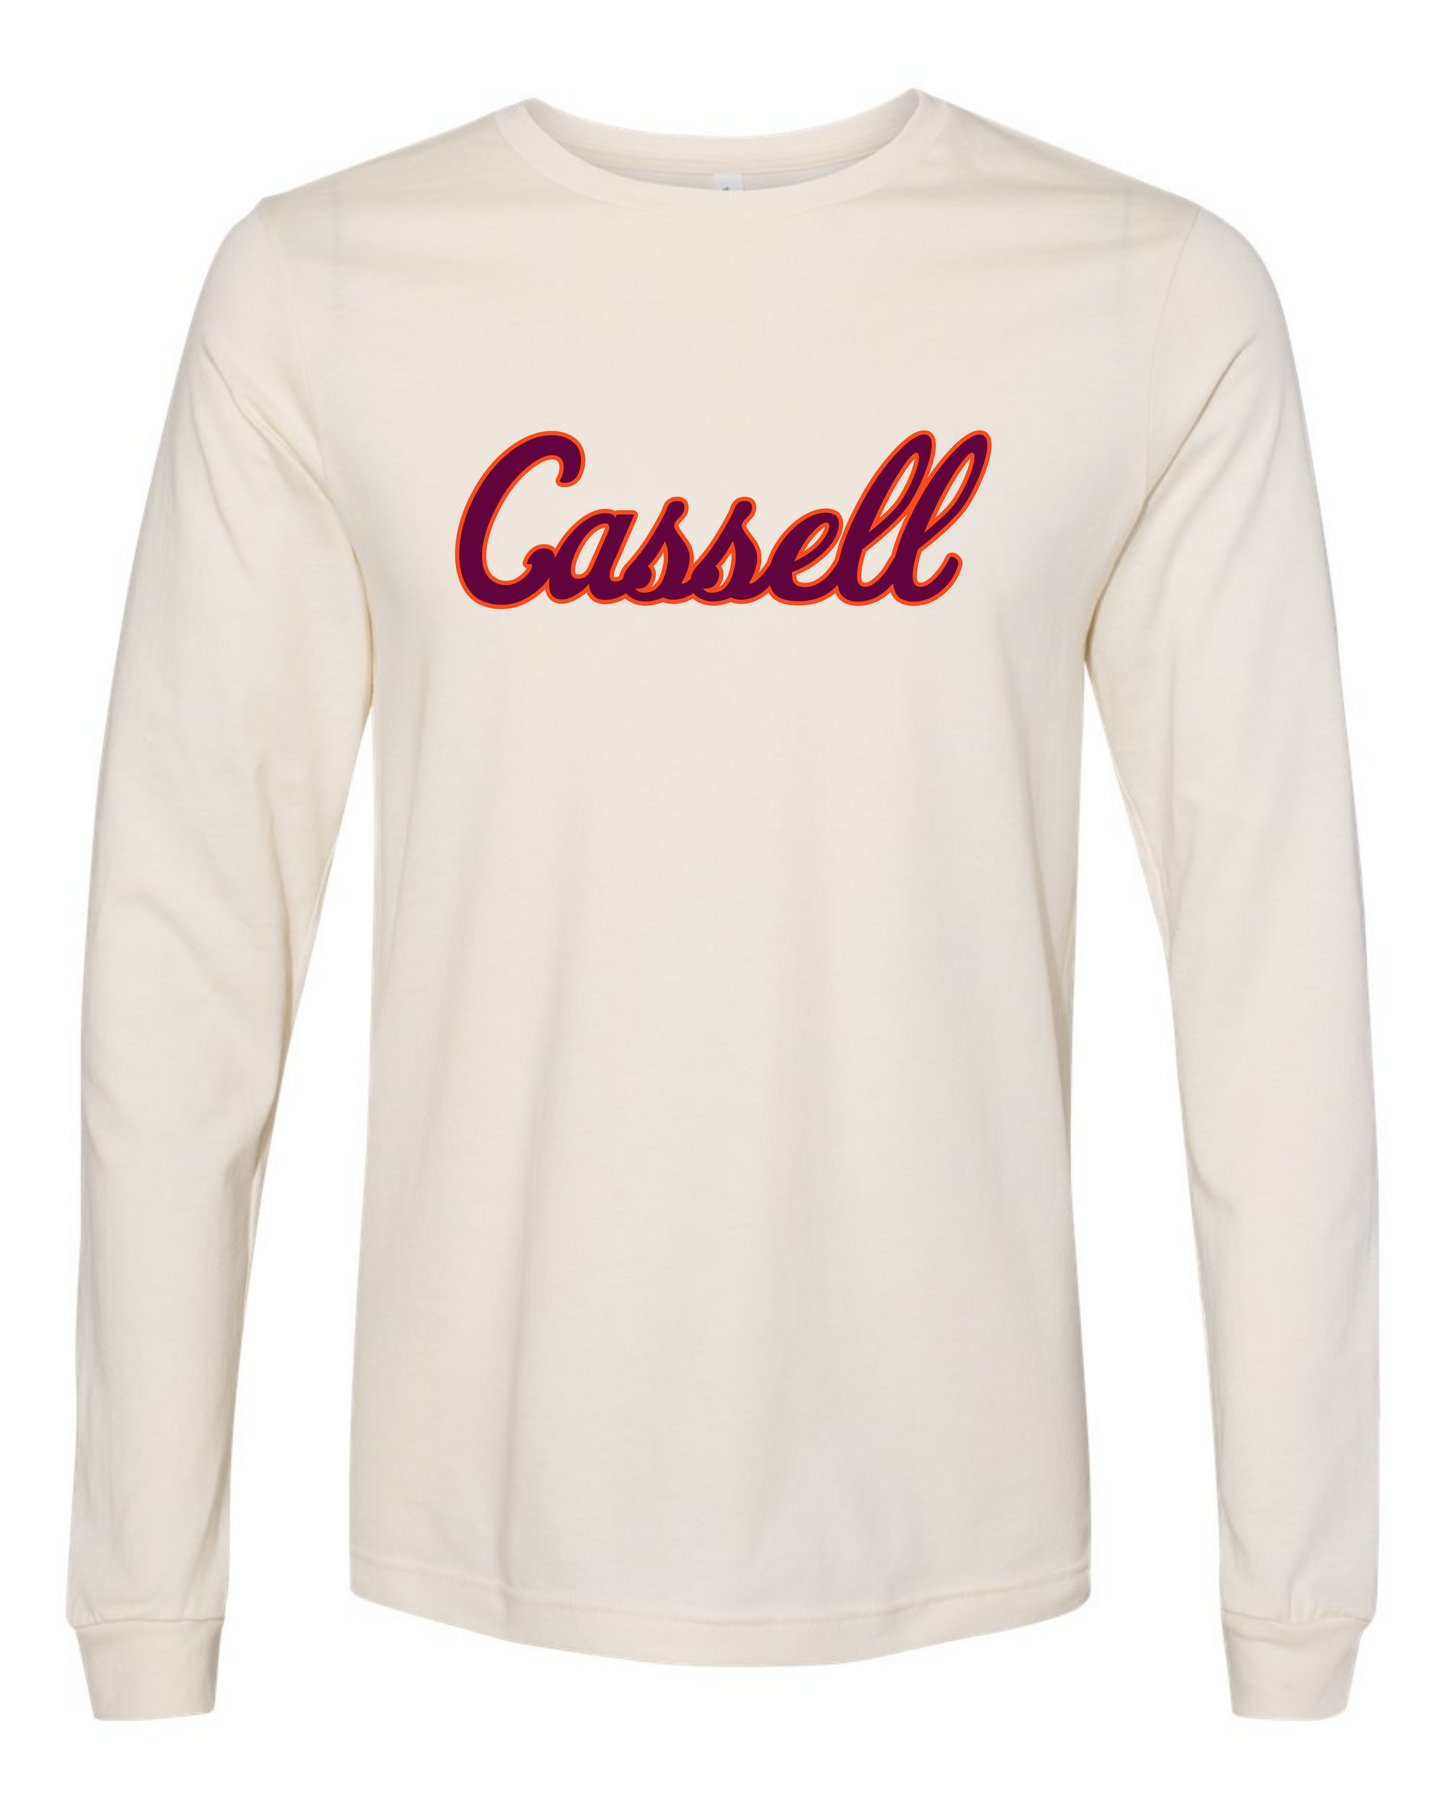 Cassell Script Long Sleeve Shirt - Cream